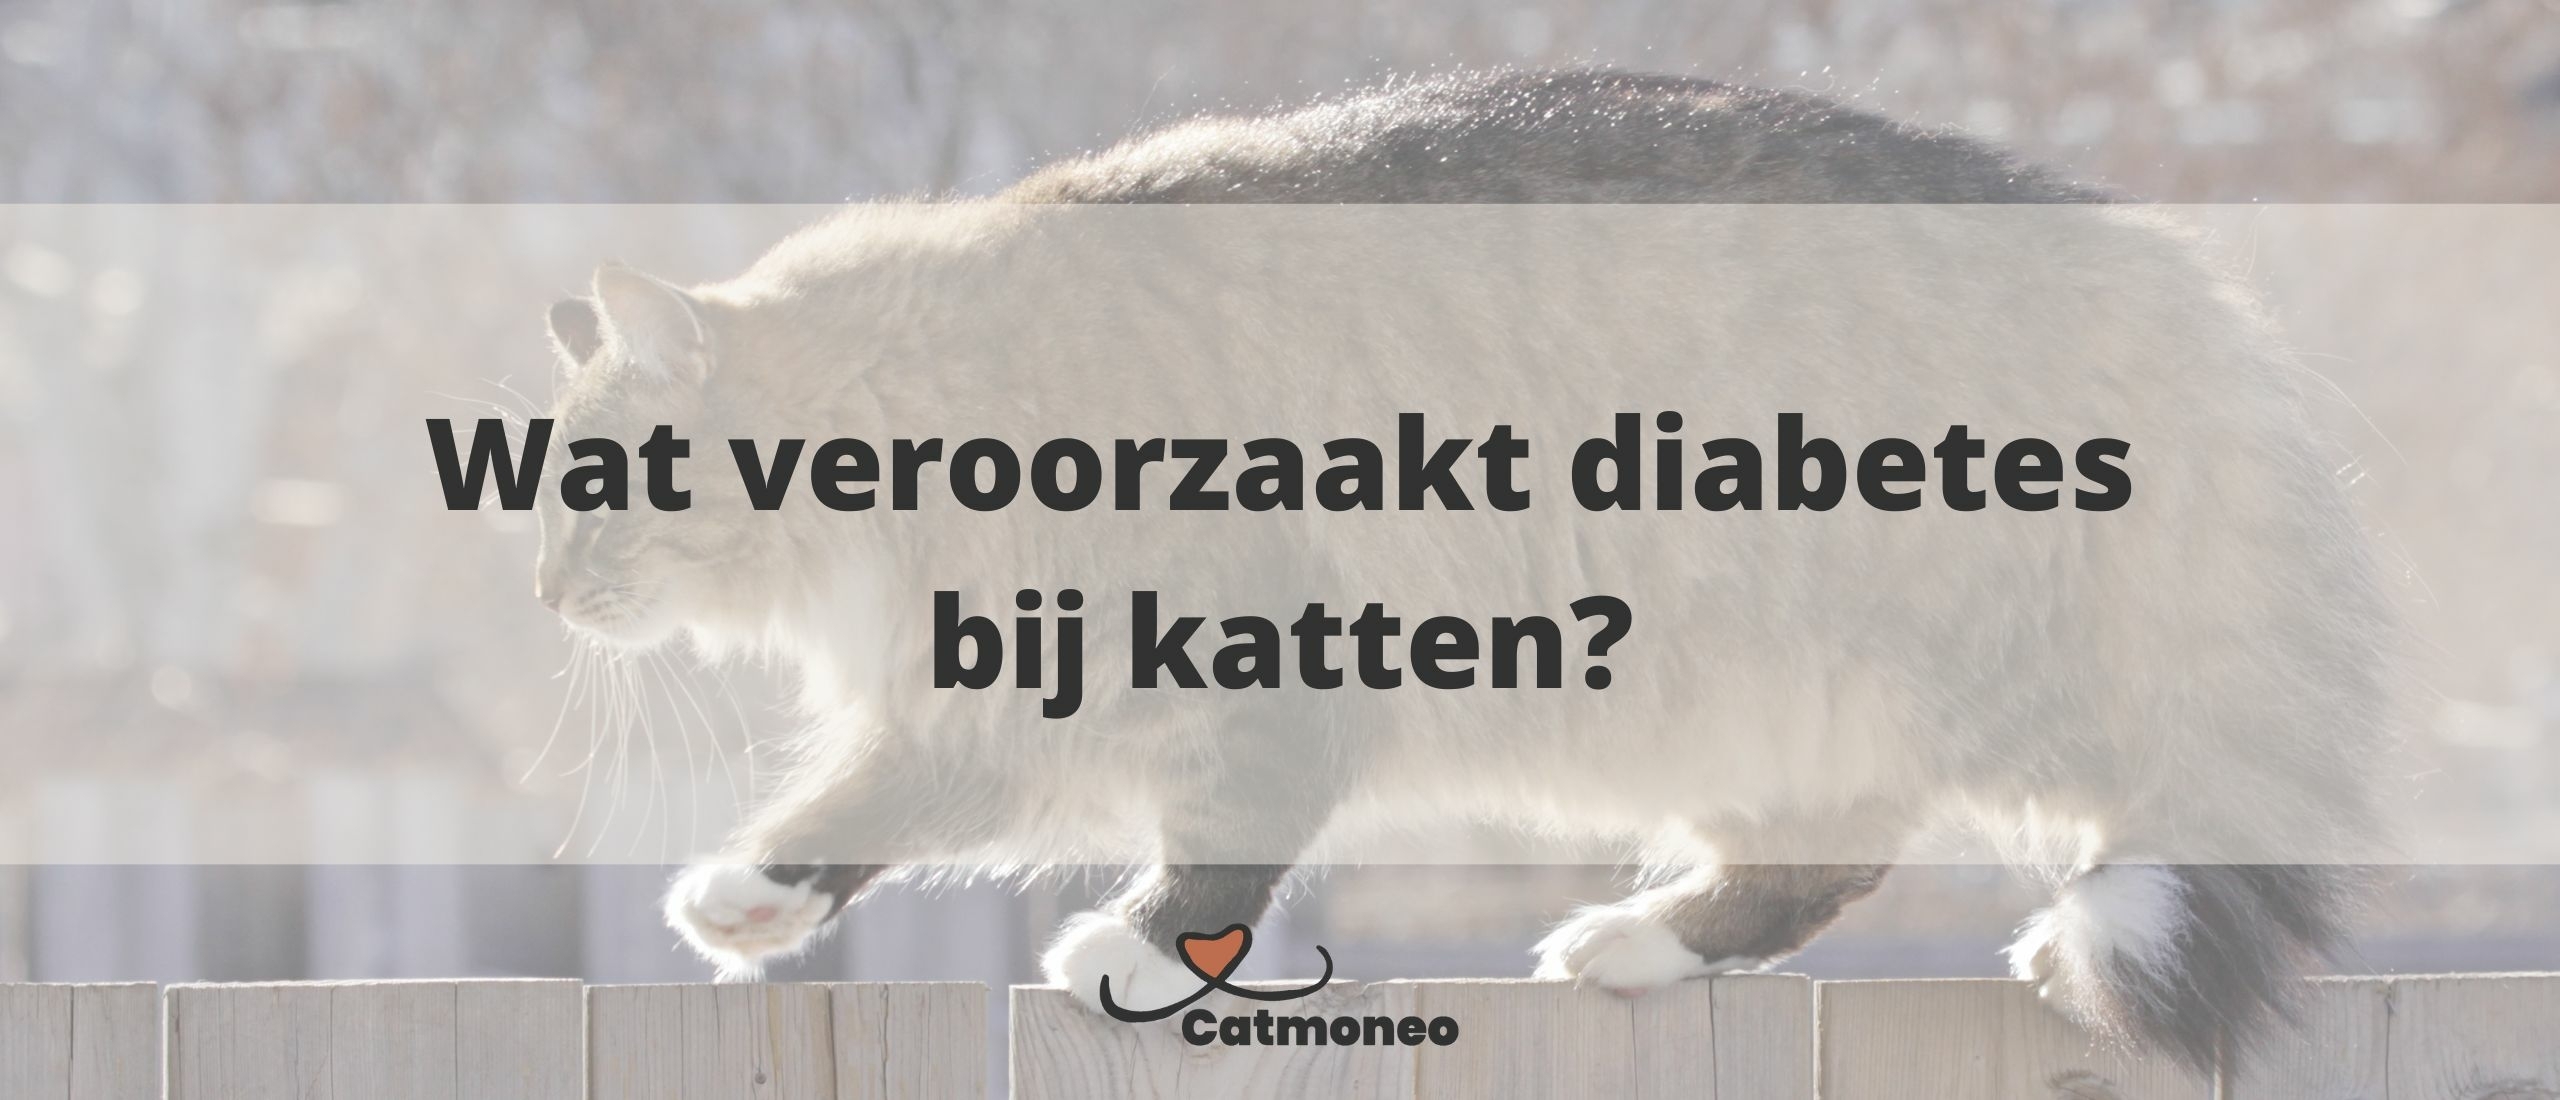 Wat veroorzaakt diabetes bij katten?